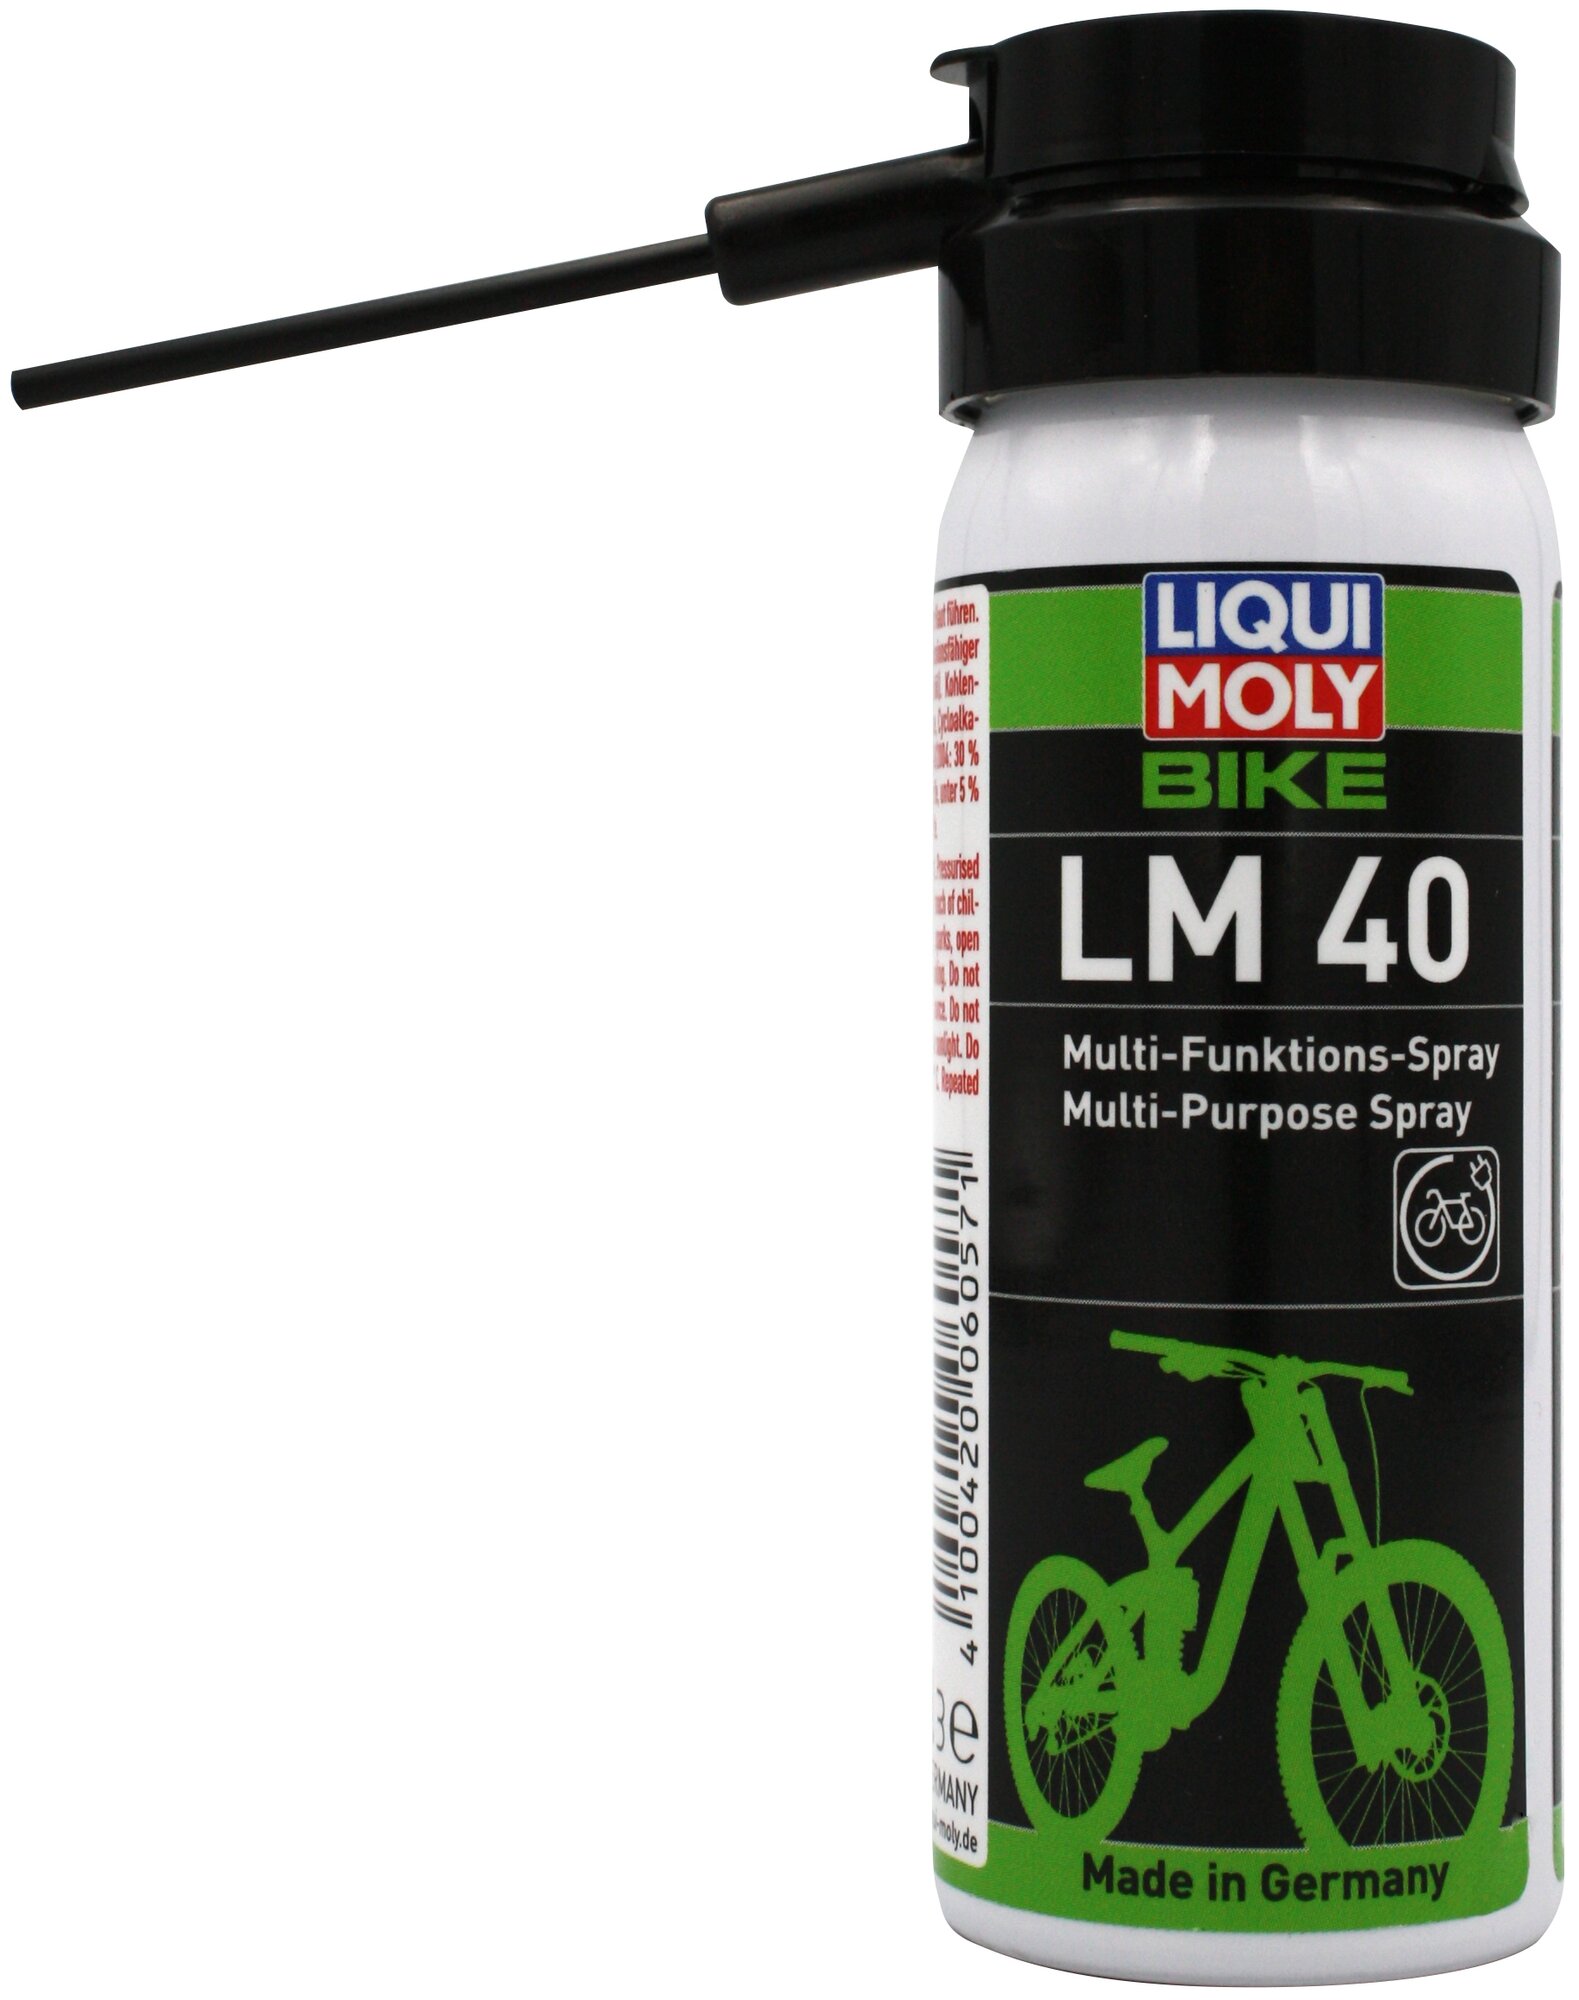 Велосипедная косметика для велосипеда LIQUI MOLY Bike LM 40